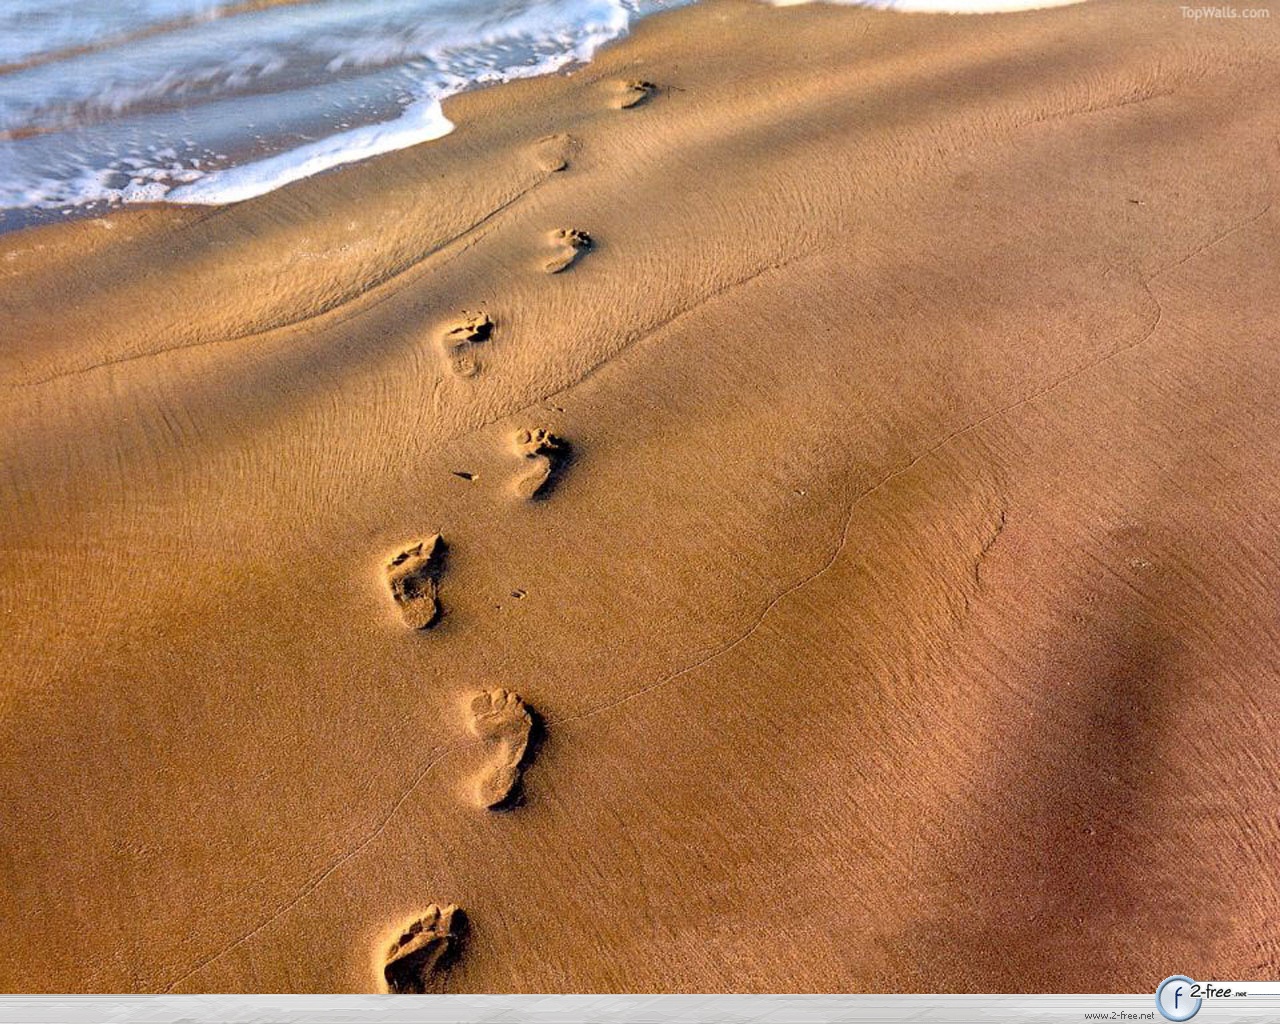 http://2.bp.blogspot.com/-kz6YsRu0QYU/Ta9gjov13pI/AAAAAAAAAaA/DOOsV3EiB64/s1600/footprints-in-sand1.jpg